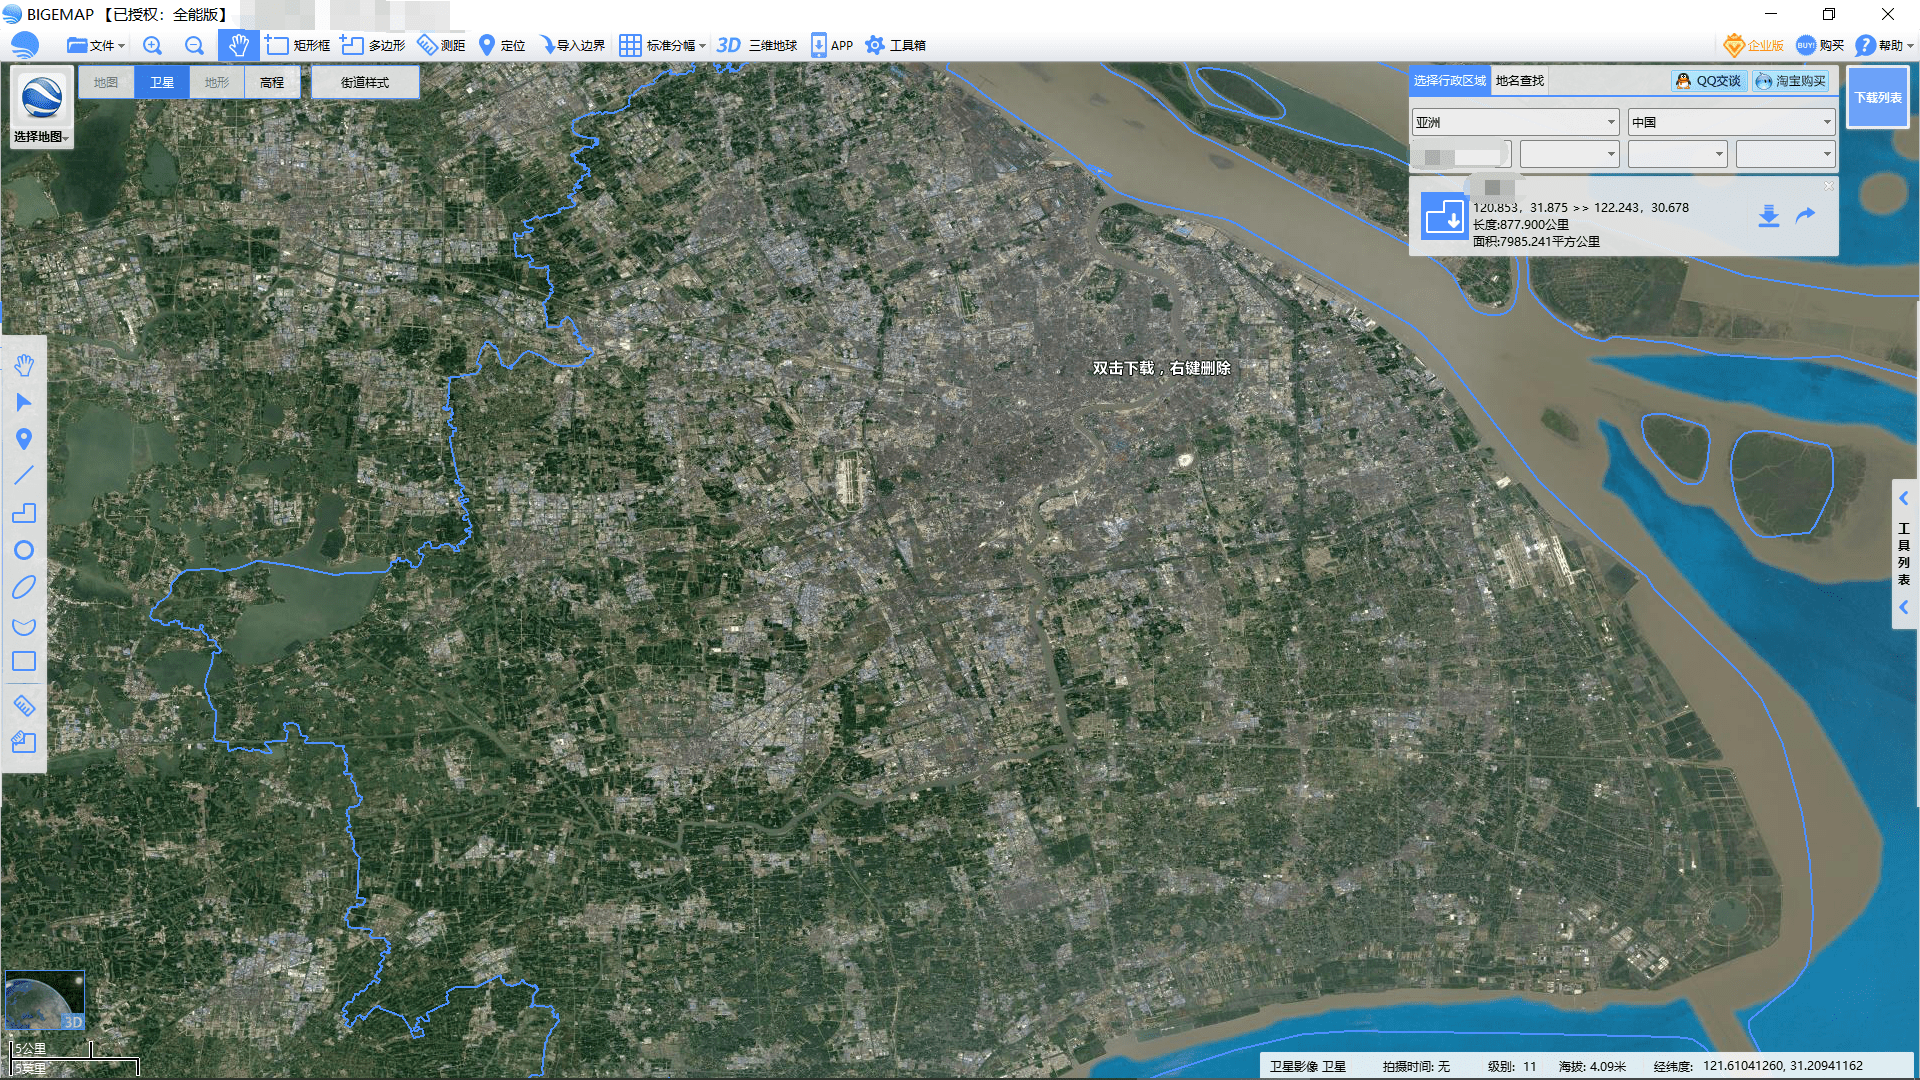 看国内各大城市卫星地图和路网猜猜是哪座城市